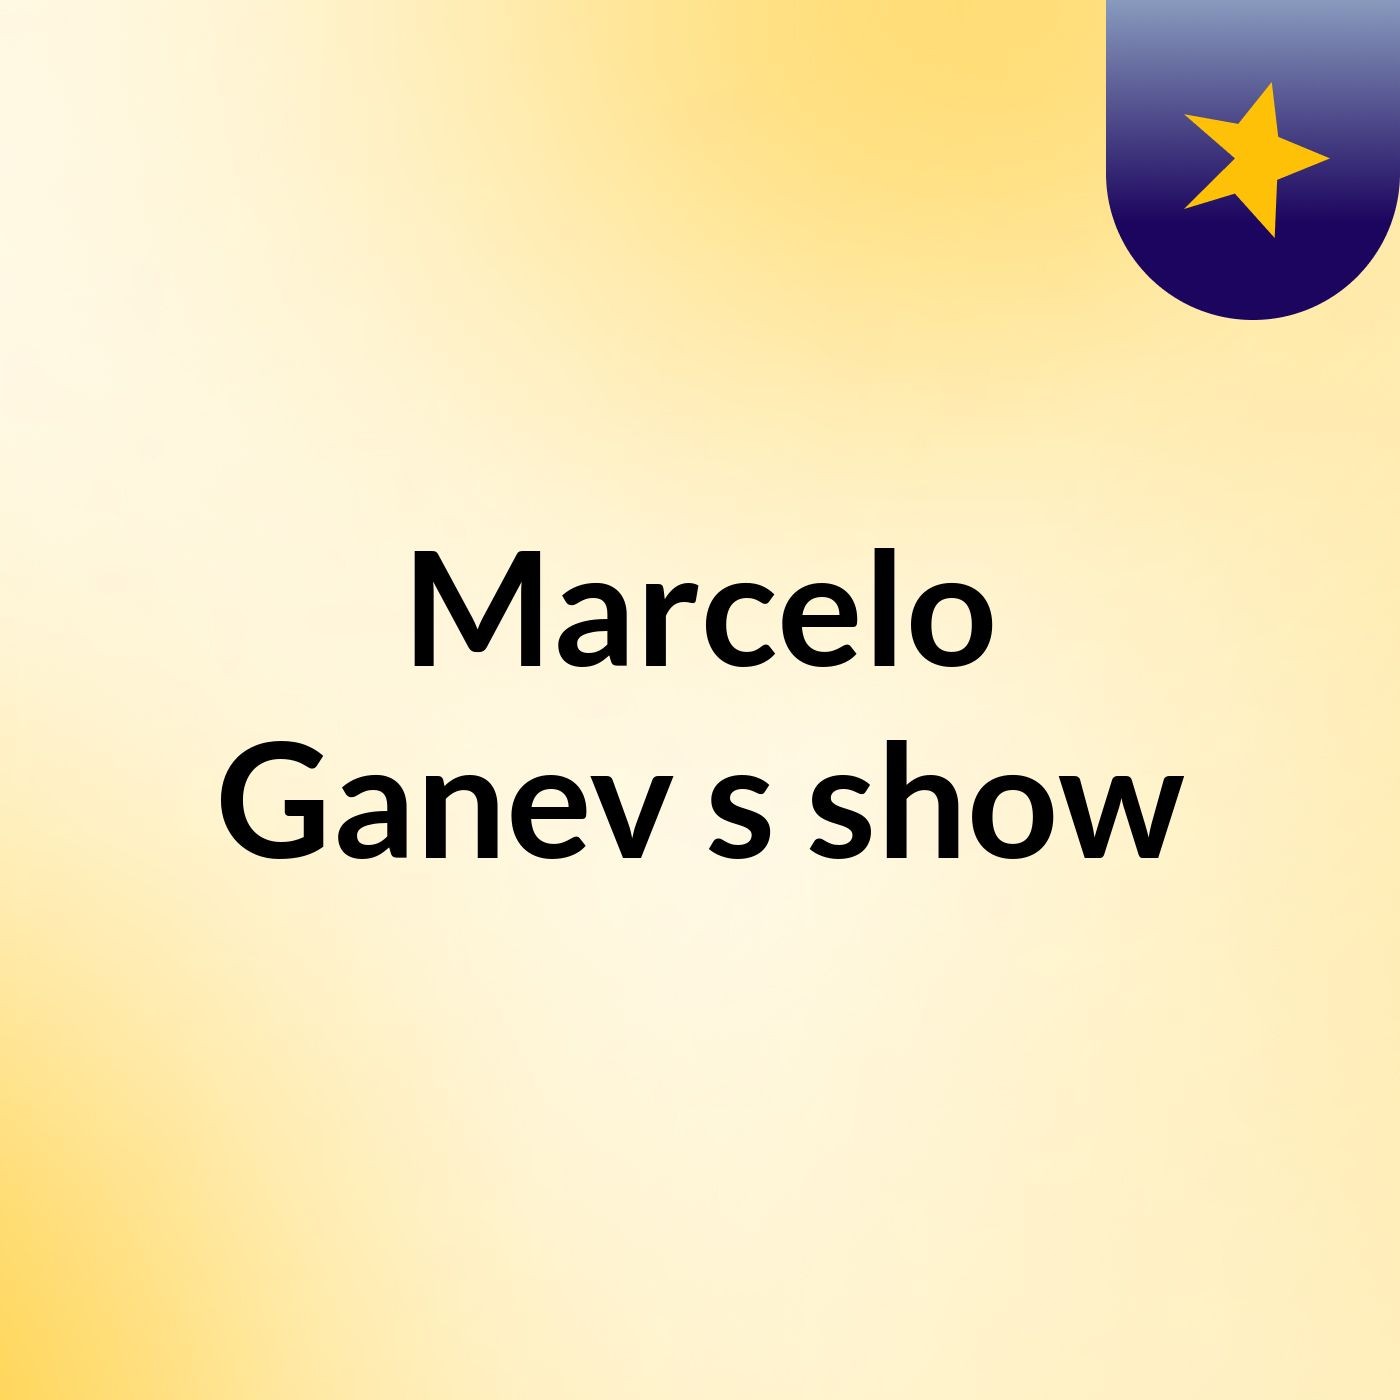 Marcelo Ganev's show